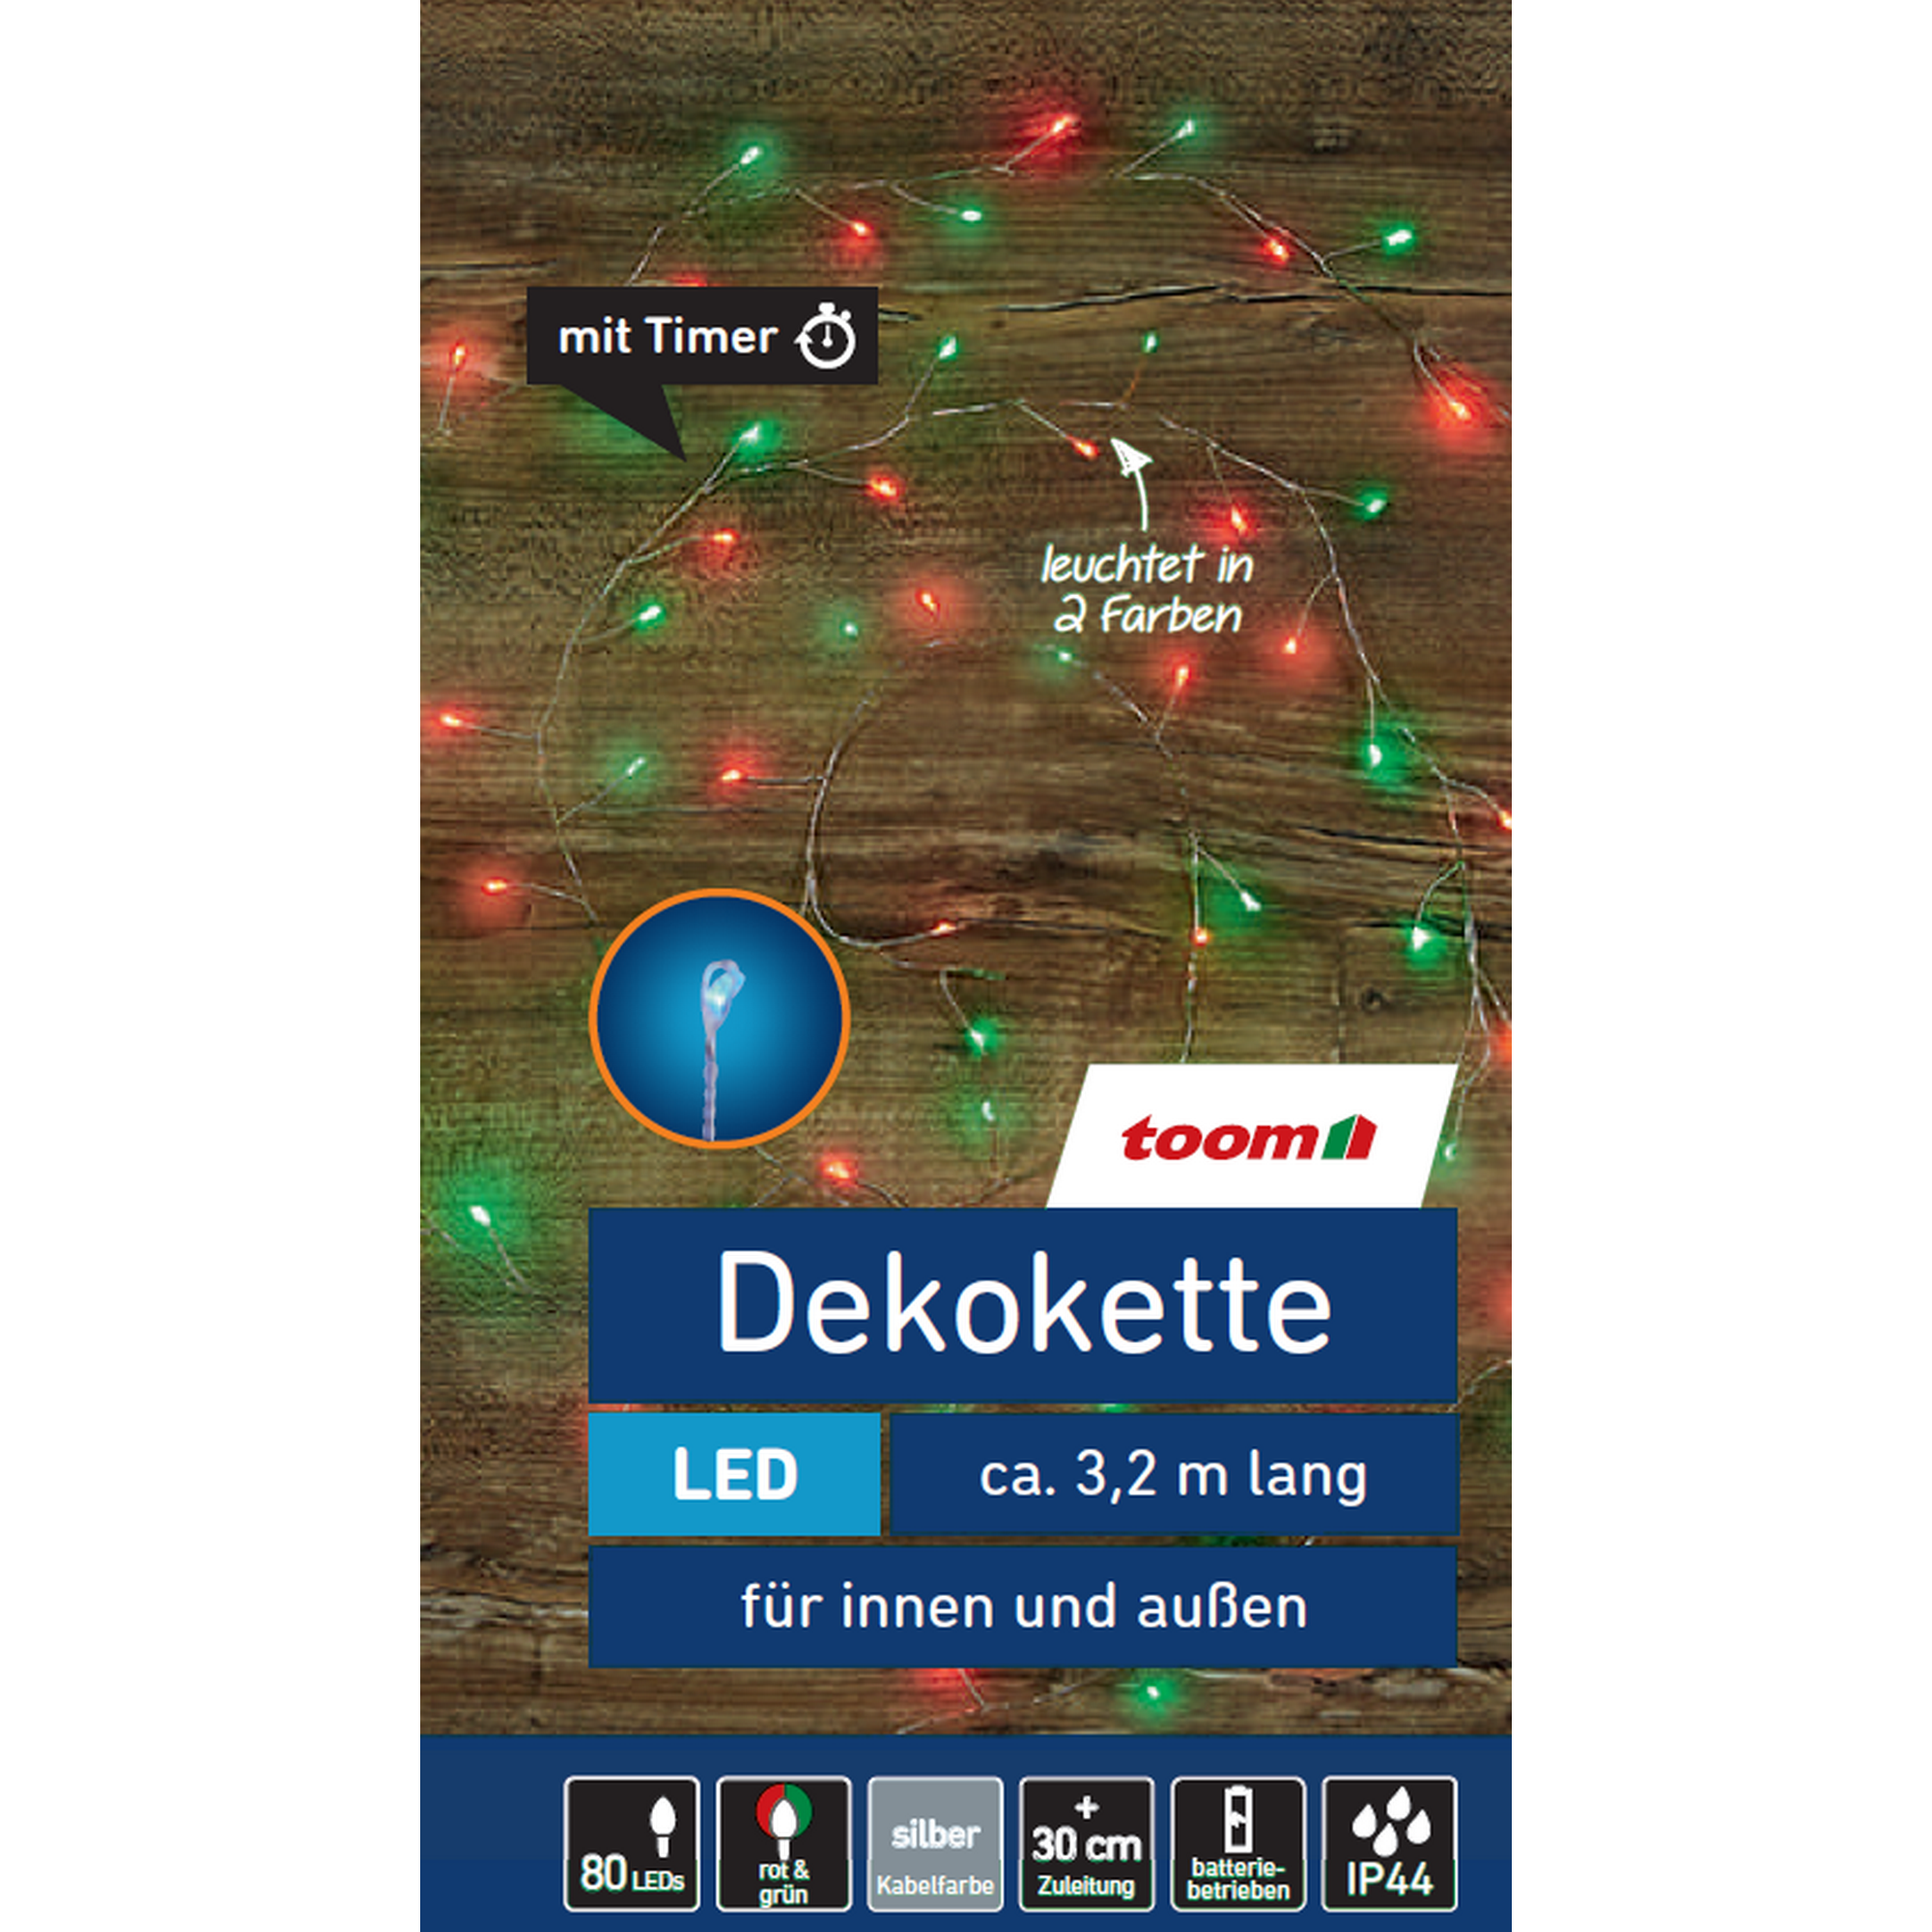 LED-Lichterkette 80 LEDs rot/grün 320 cm + product picture